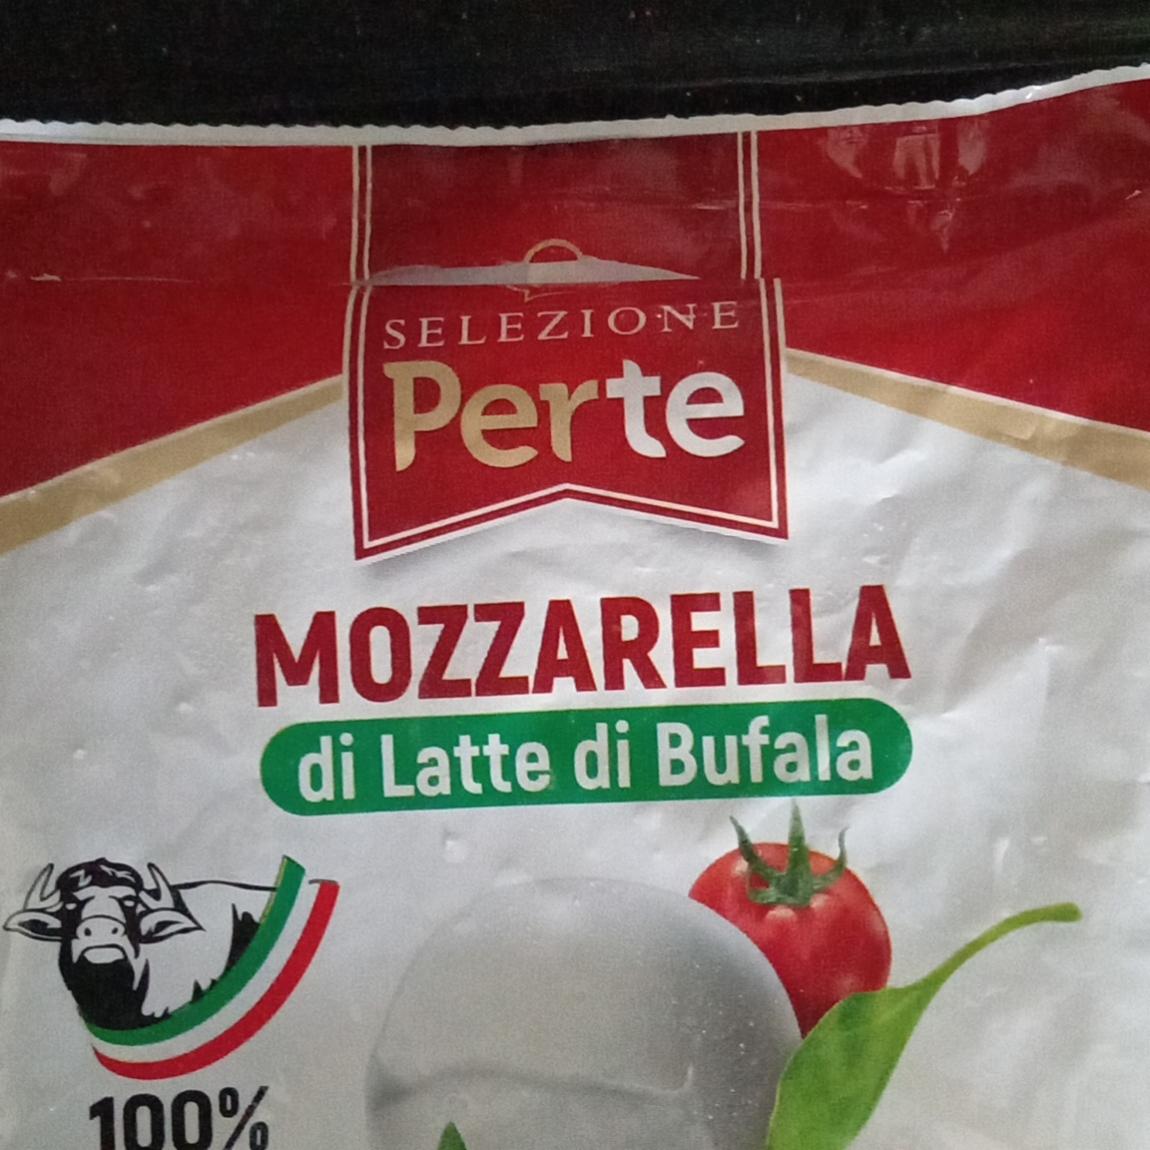 Fotografie - Mozzarella di Latte di Bufala Perte